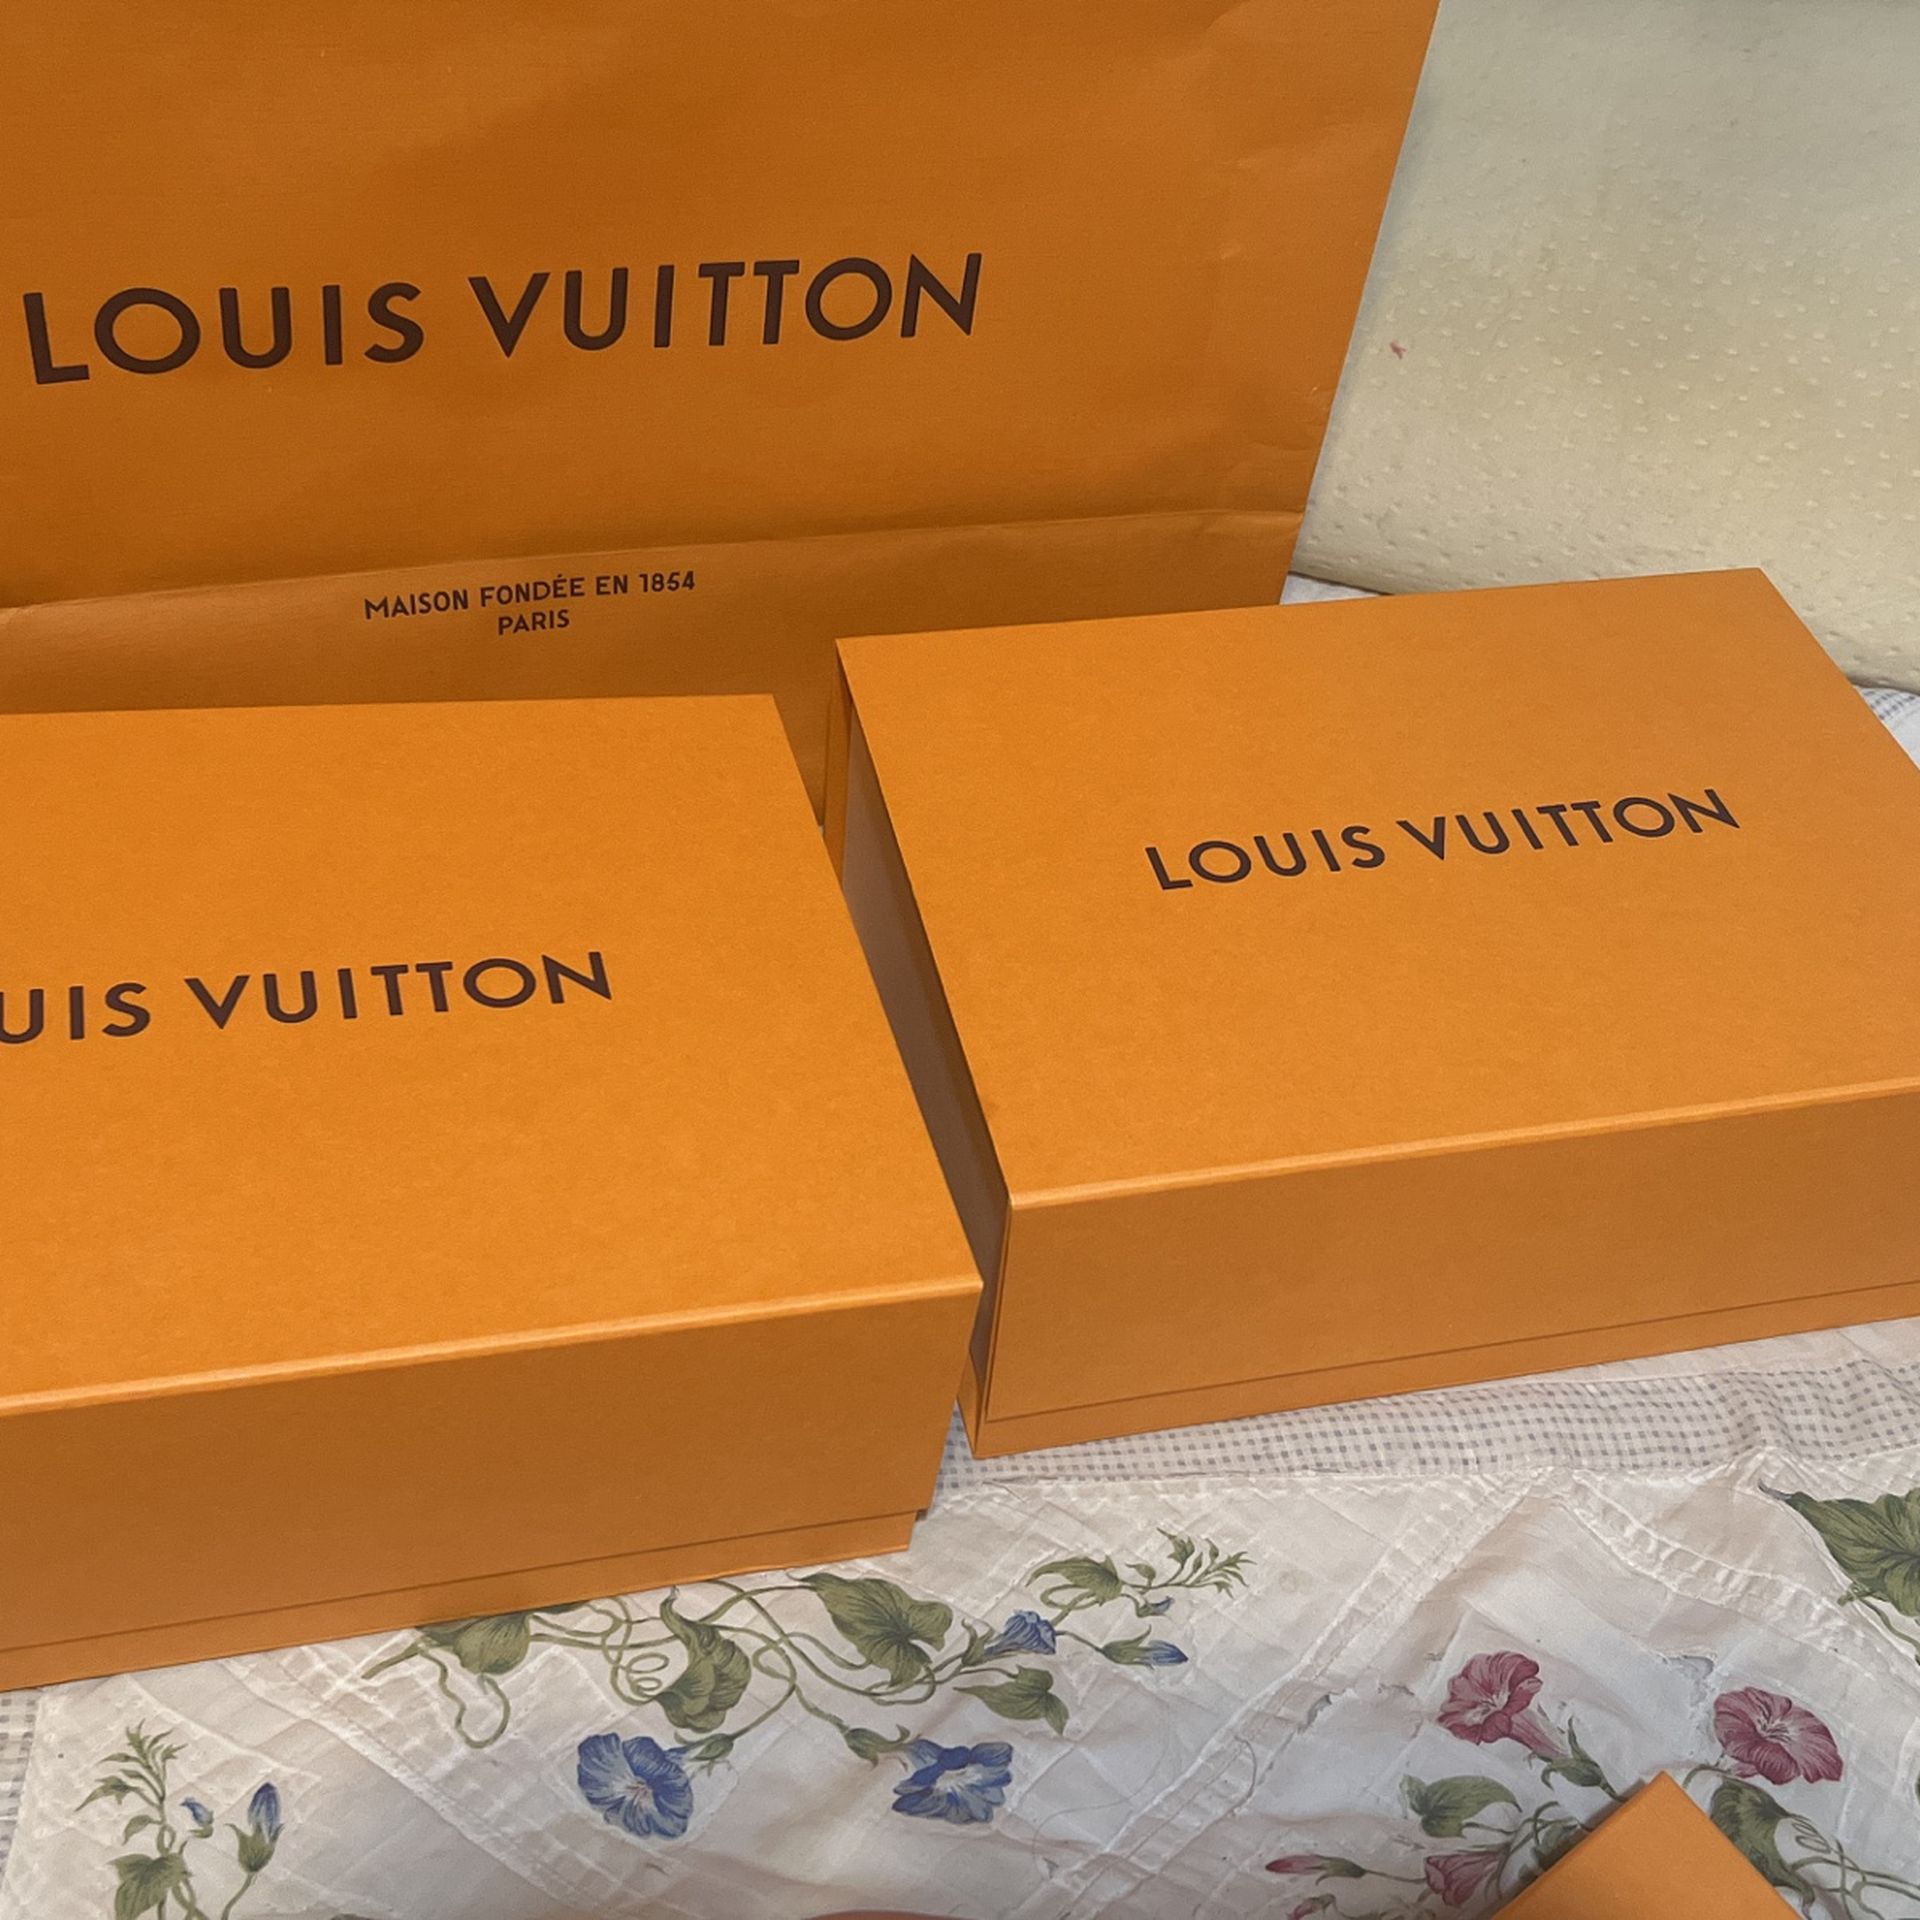 Louis Vuitton Empty Box 13.75 x 8.5 x 1.5. for Sale in Miami, FL -  OfferUp